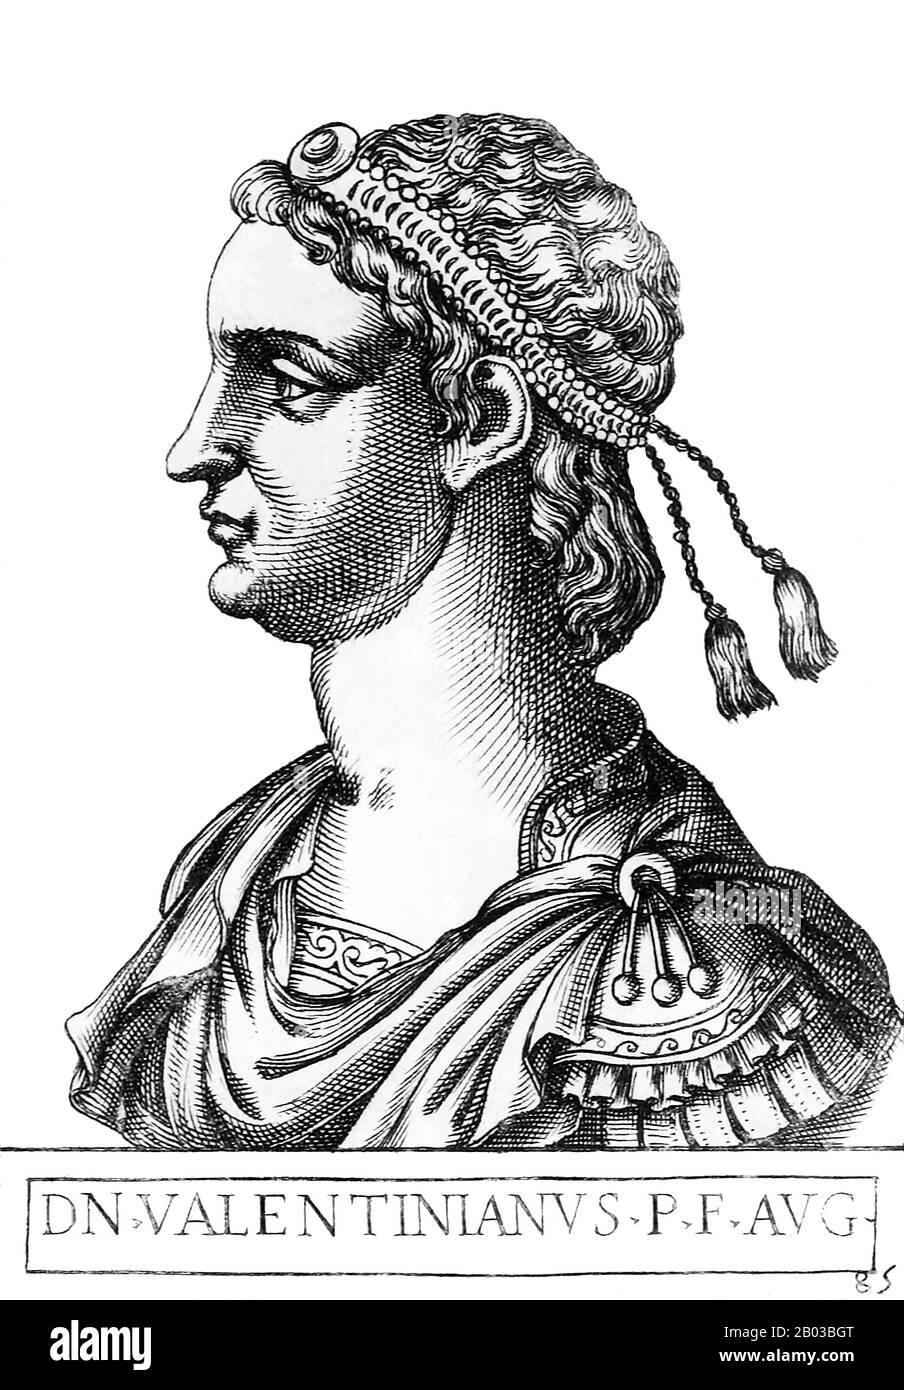 Valentinian III (419-455) era figlio dell'imperatore Costanzo III, e nipote dell'ex imperatore Onorio attraverso sua madre, Galla Placidia. Era anche cugino di Teodosio II, imperatore romano d'Oriente. Quando Onorio morì nel 423 e l'usurpatore Joannes prese il potere, Teodosio riconobbe Valentiniano come vero imperatore dell'Occidente, e lo pose sul trono nel 425, di soli sei anni. A causa della sua età, sua madre governò come reggente al suo posto. Foto Stock